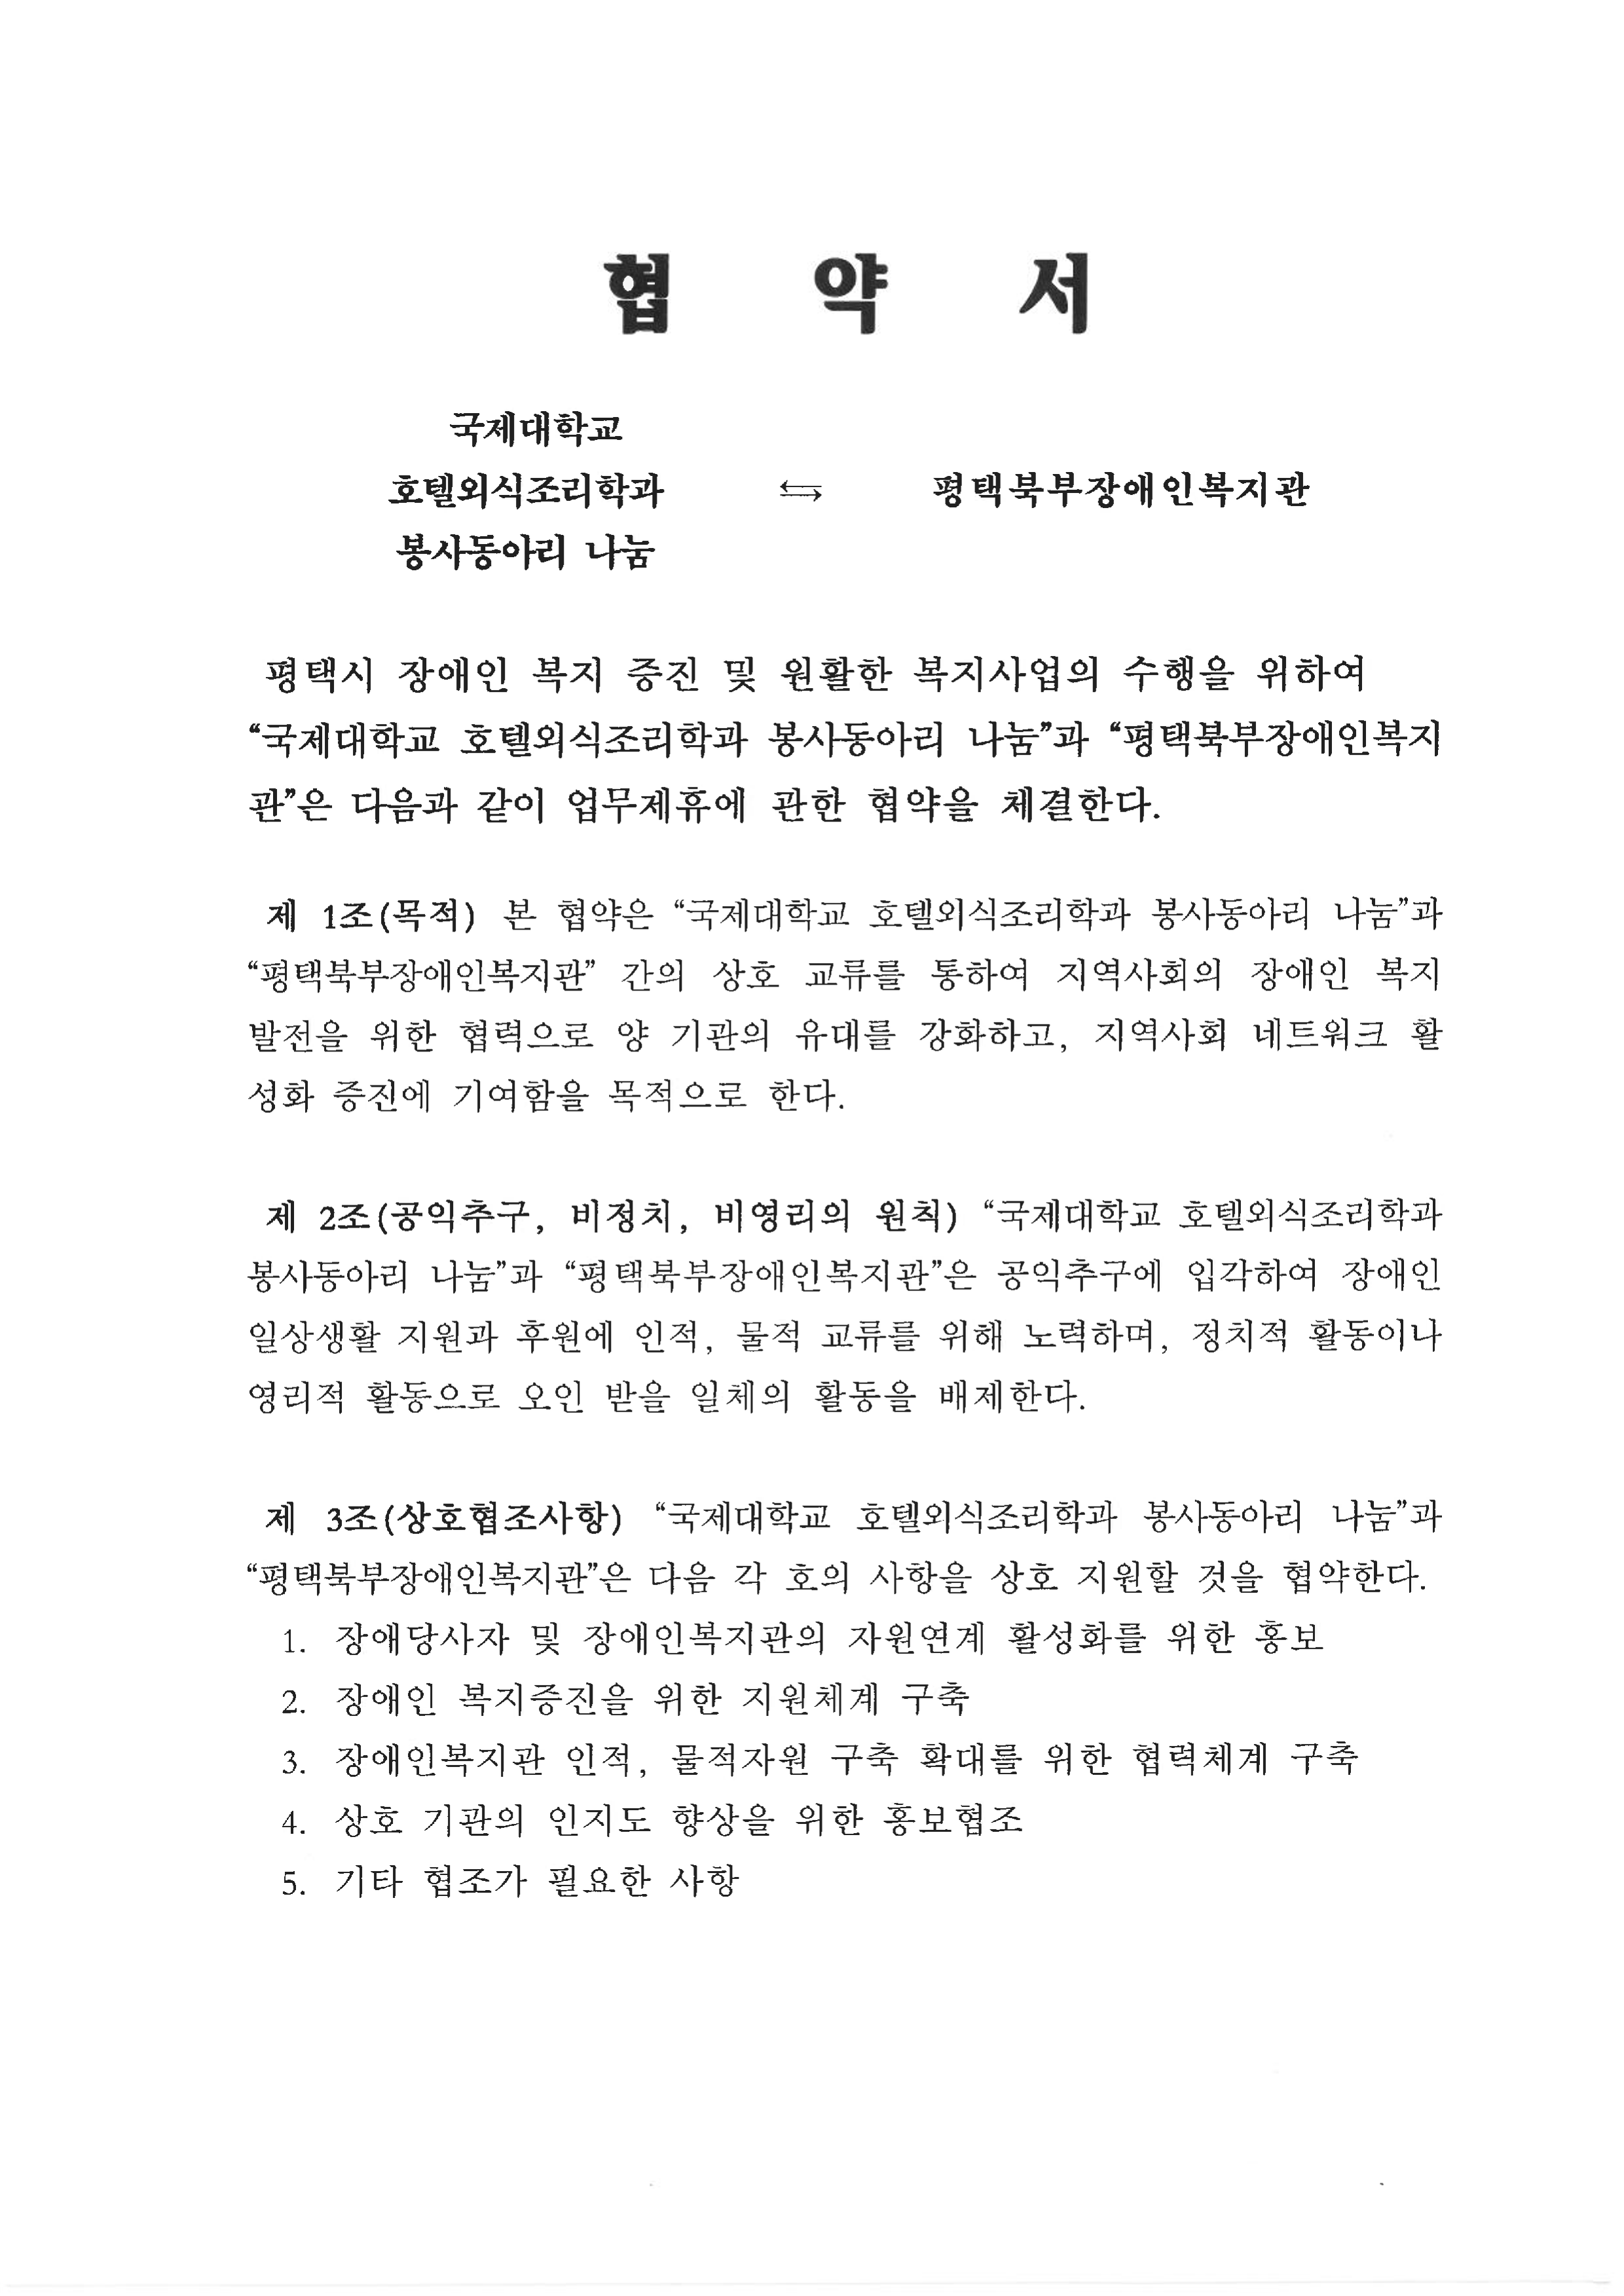 평택북부장애인복지관 협약식(봉사동아리"나눔")